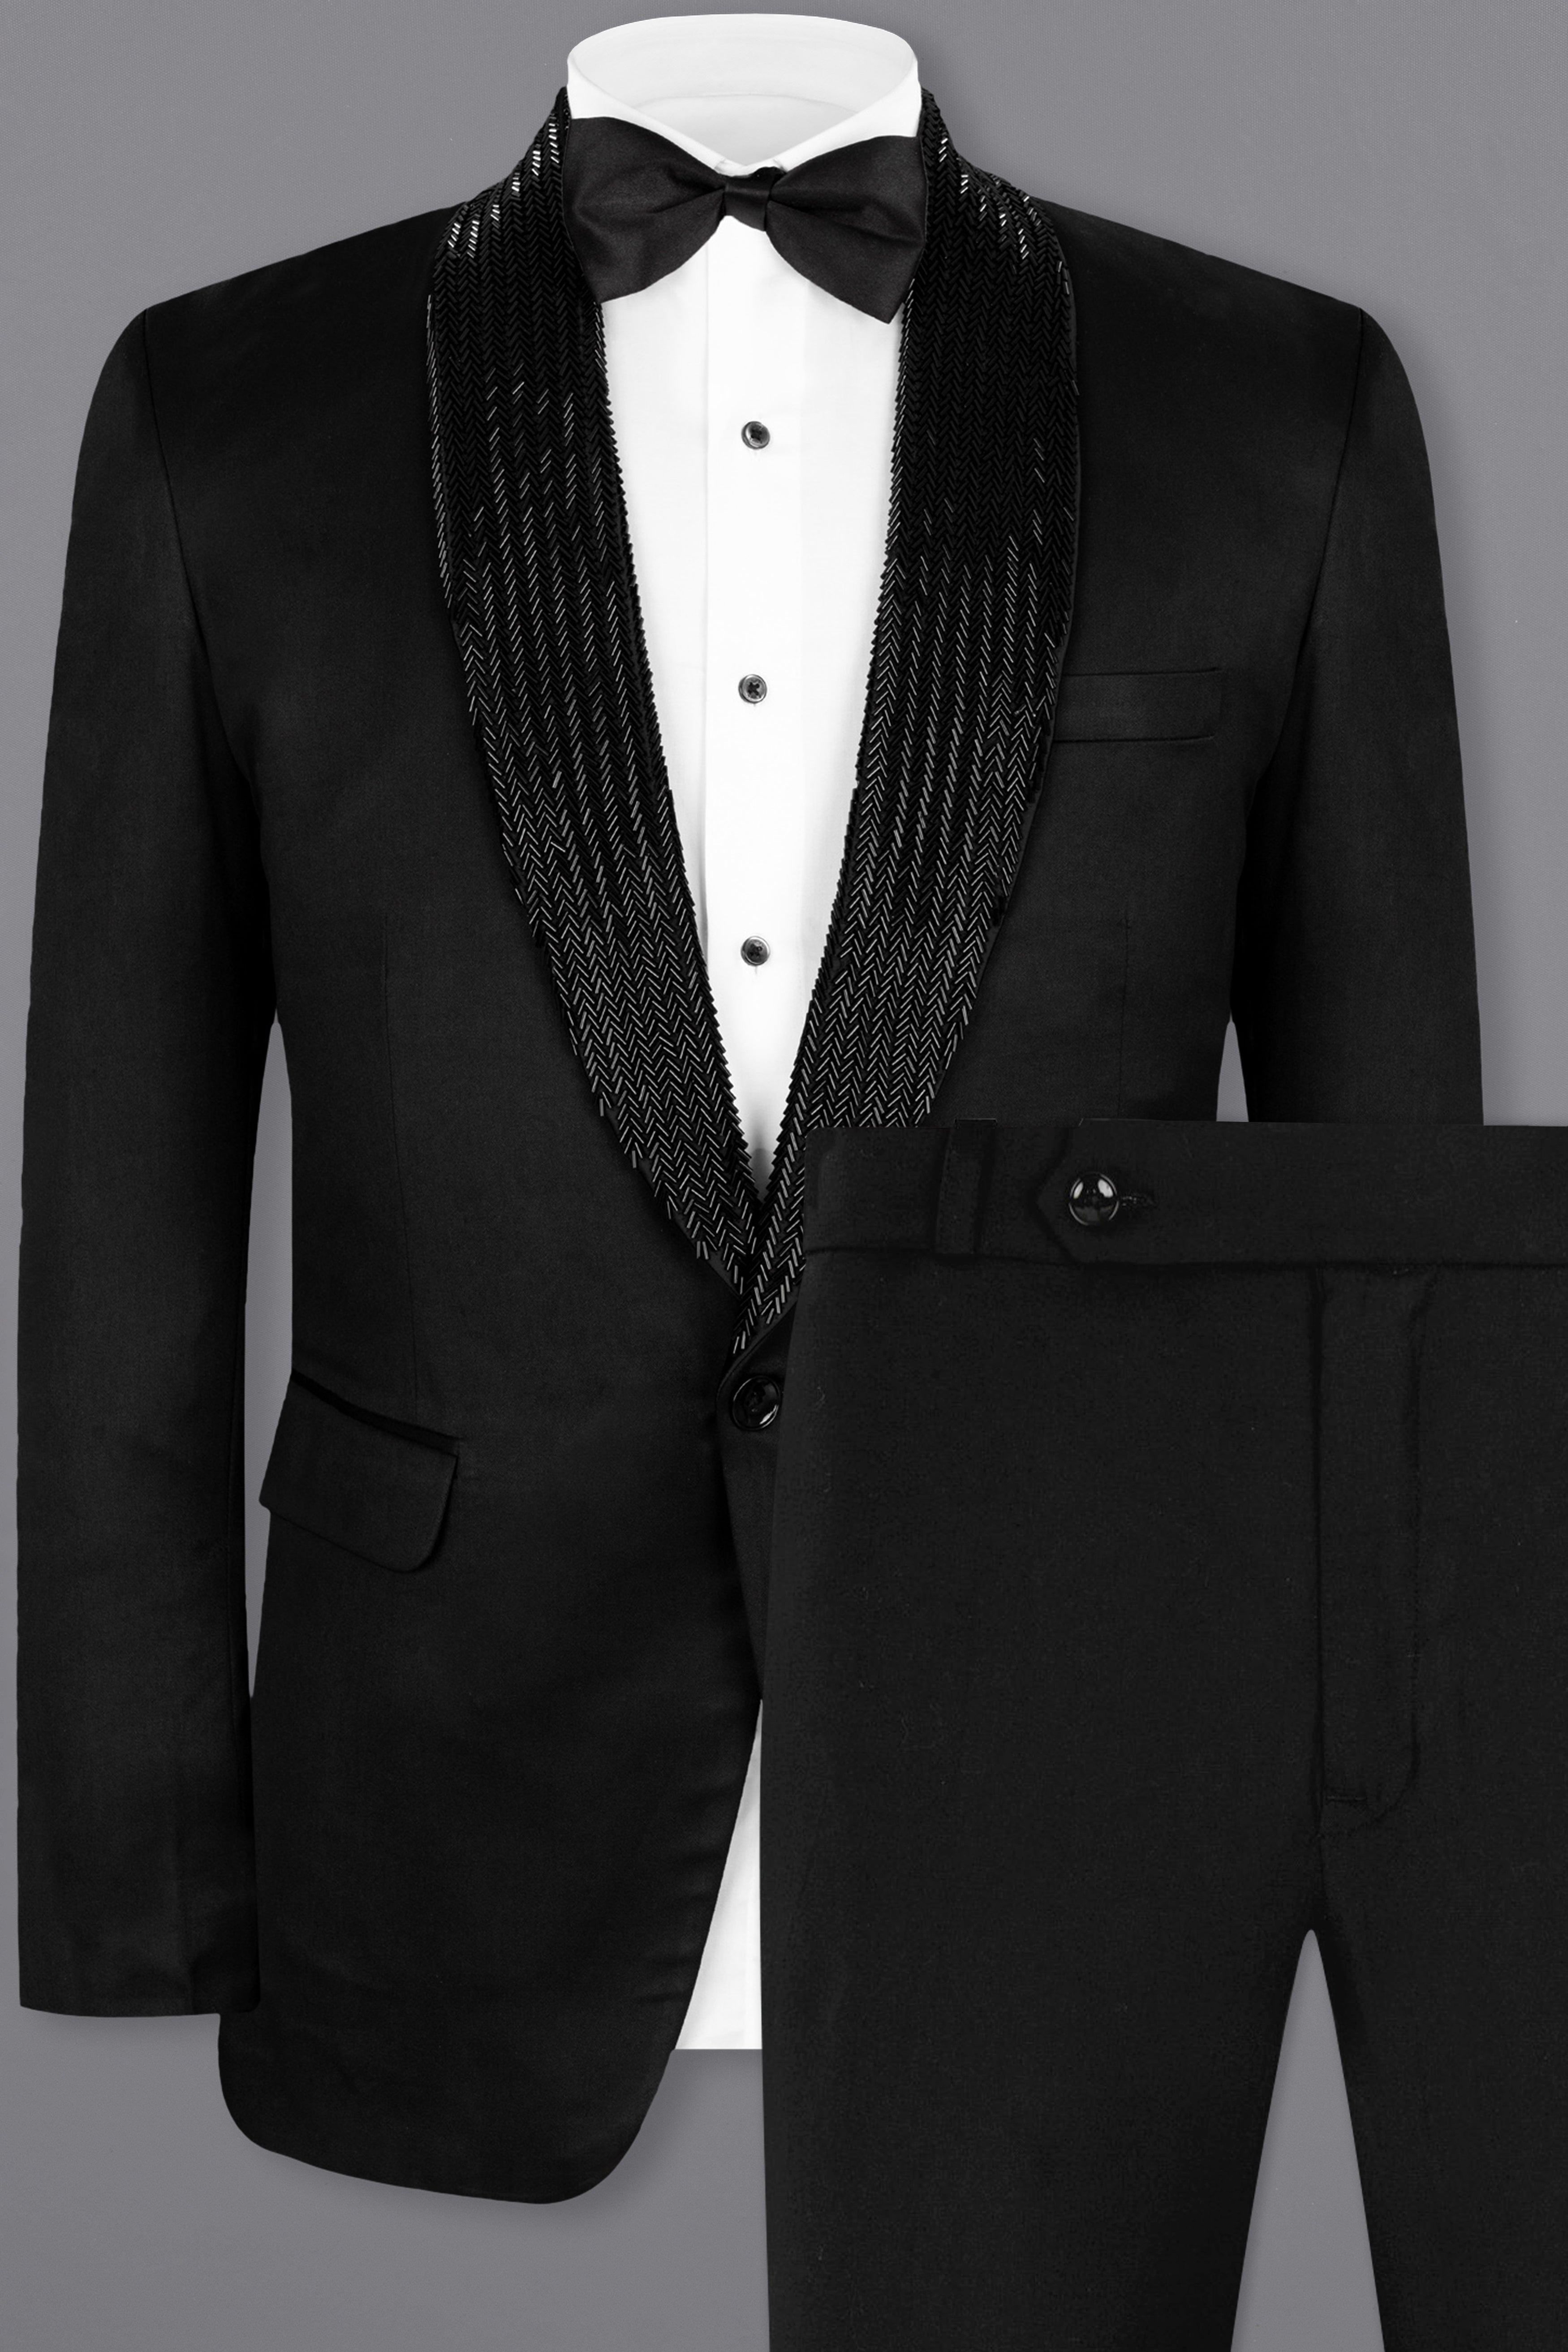 Buy White Tuxedo Suit,tuxedo for Men,mens Tuxedo for Wedding,cocktail, reception Etc Online in India - Etsy